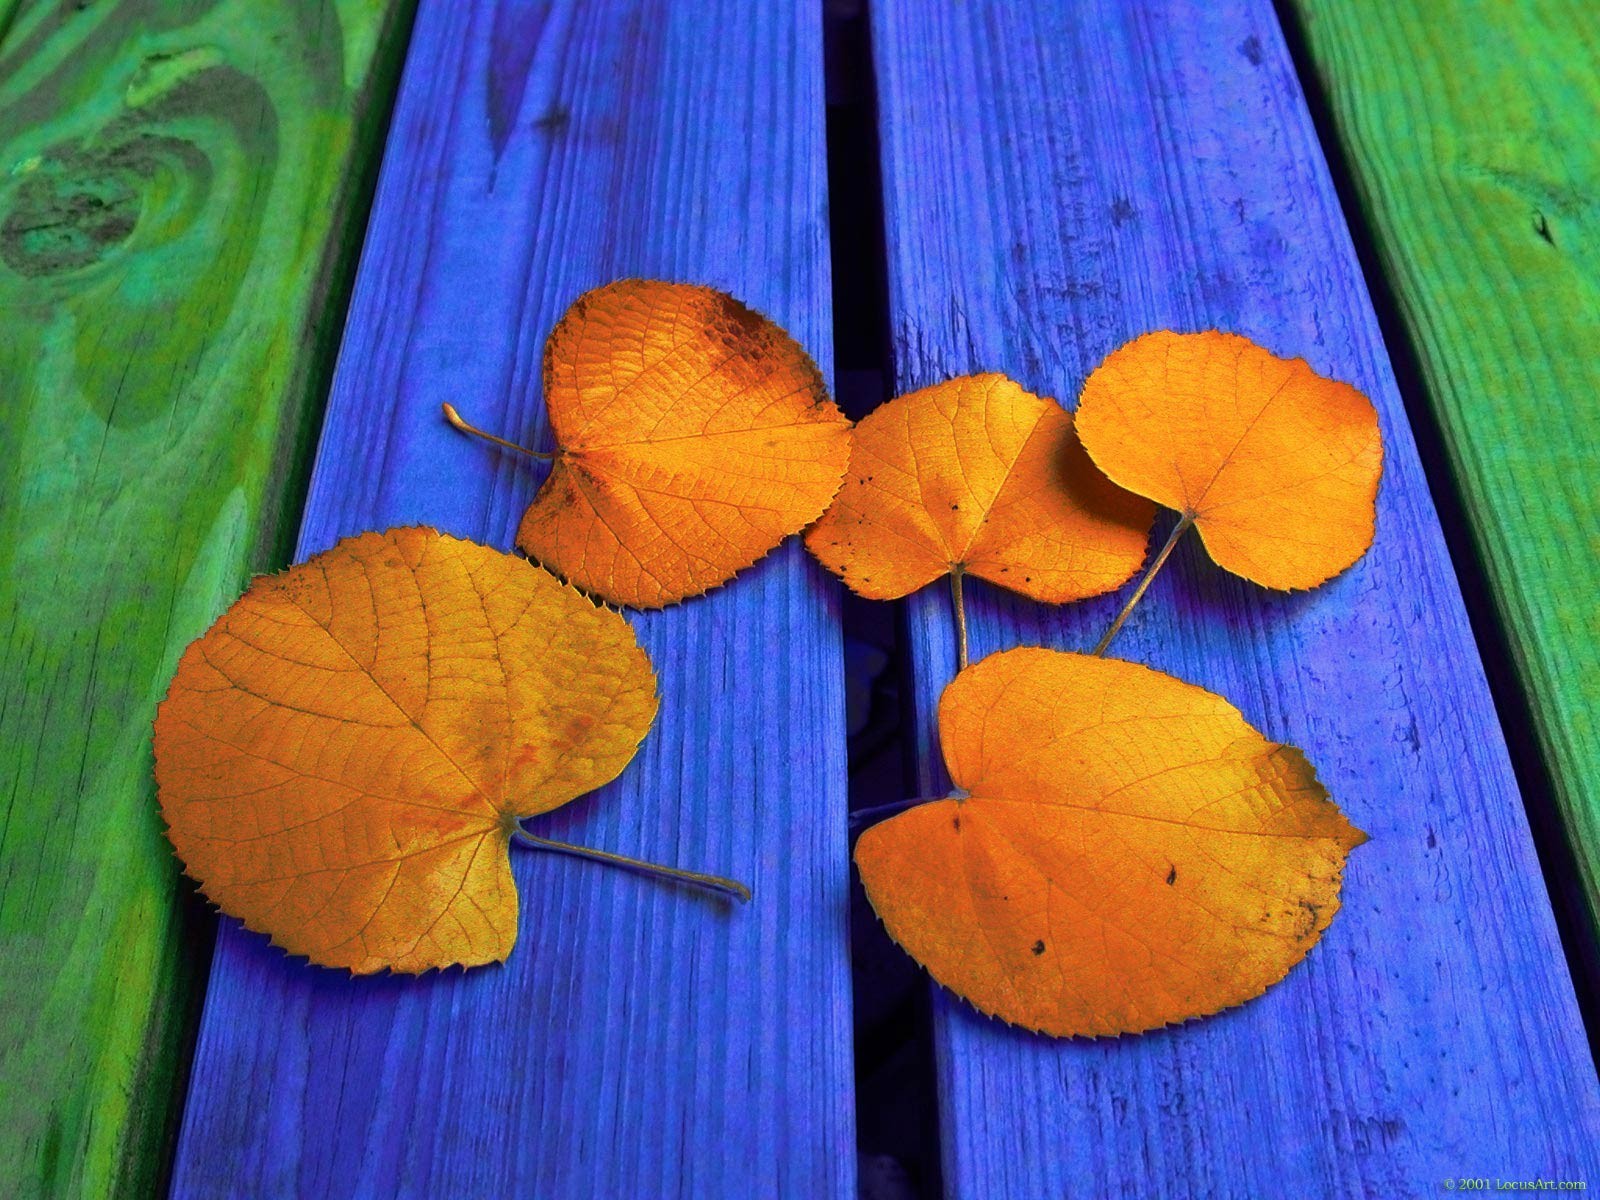 Скачать обои бесплатно Осень, Лист, Красочный, Древесина, Земля/природа картинка на рабочий стол ПК